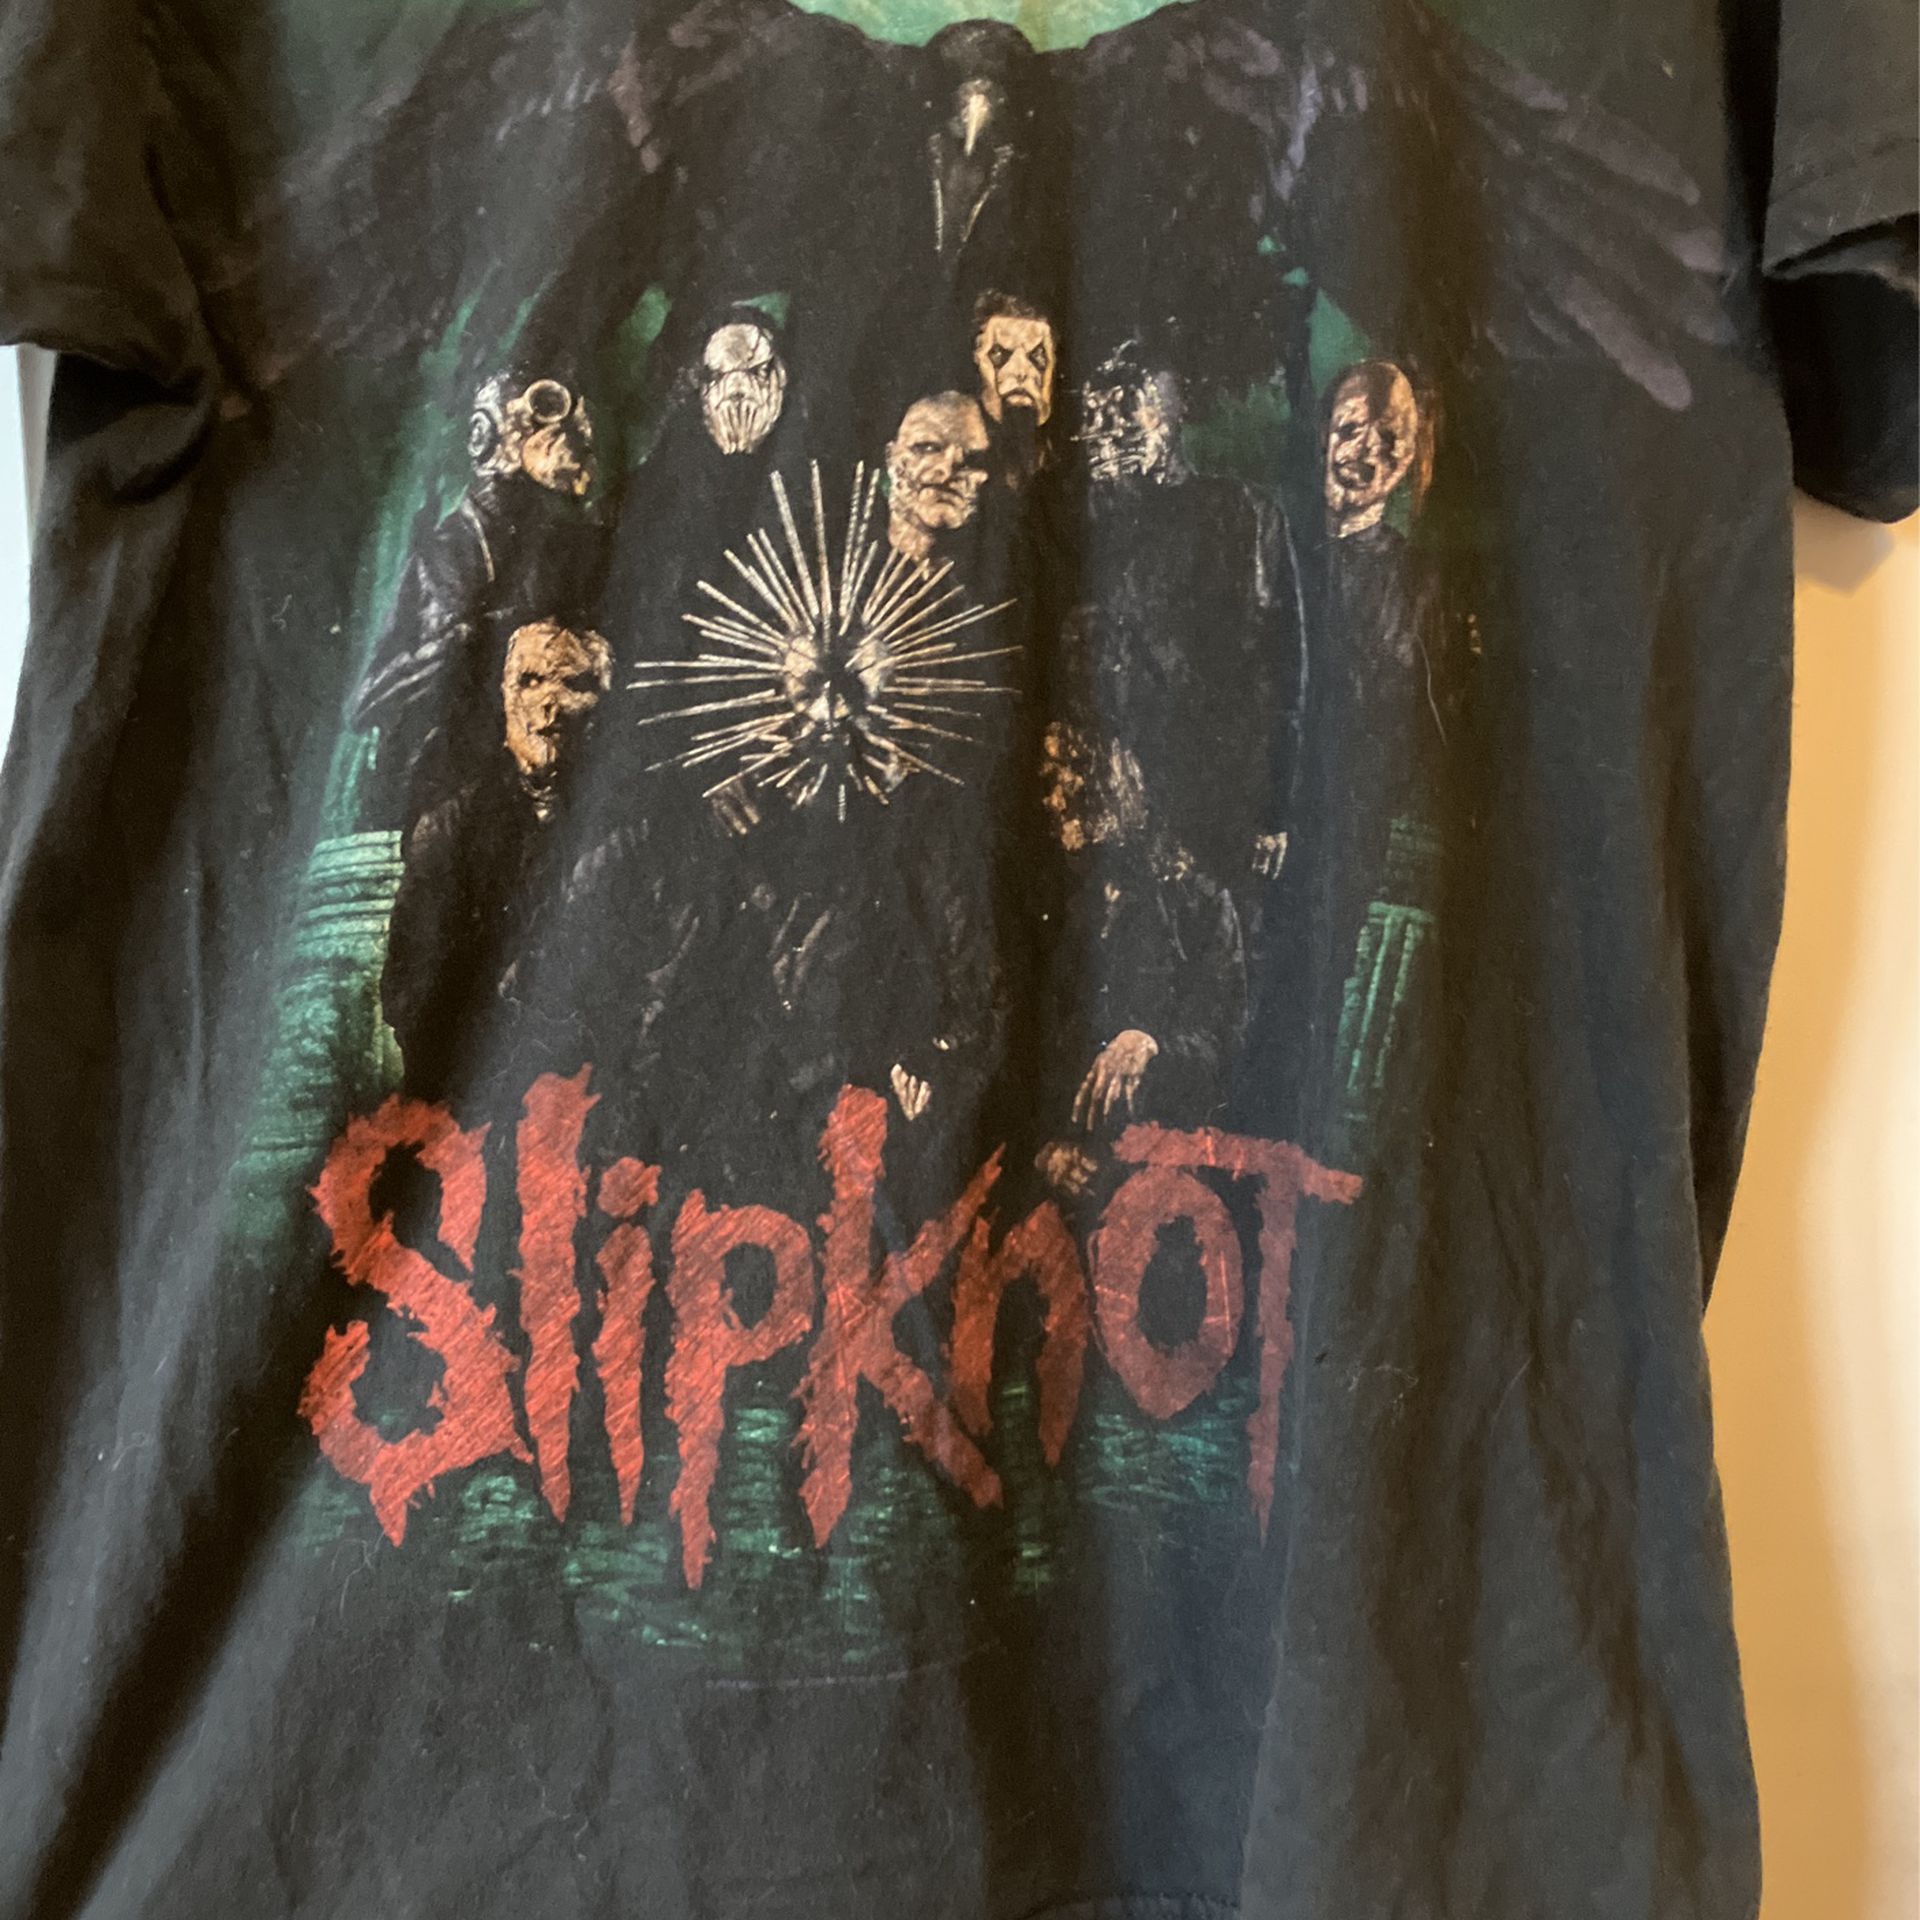 Slipknot Shirt